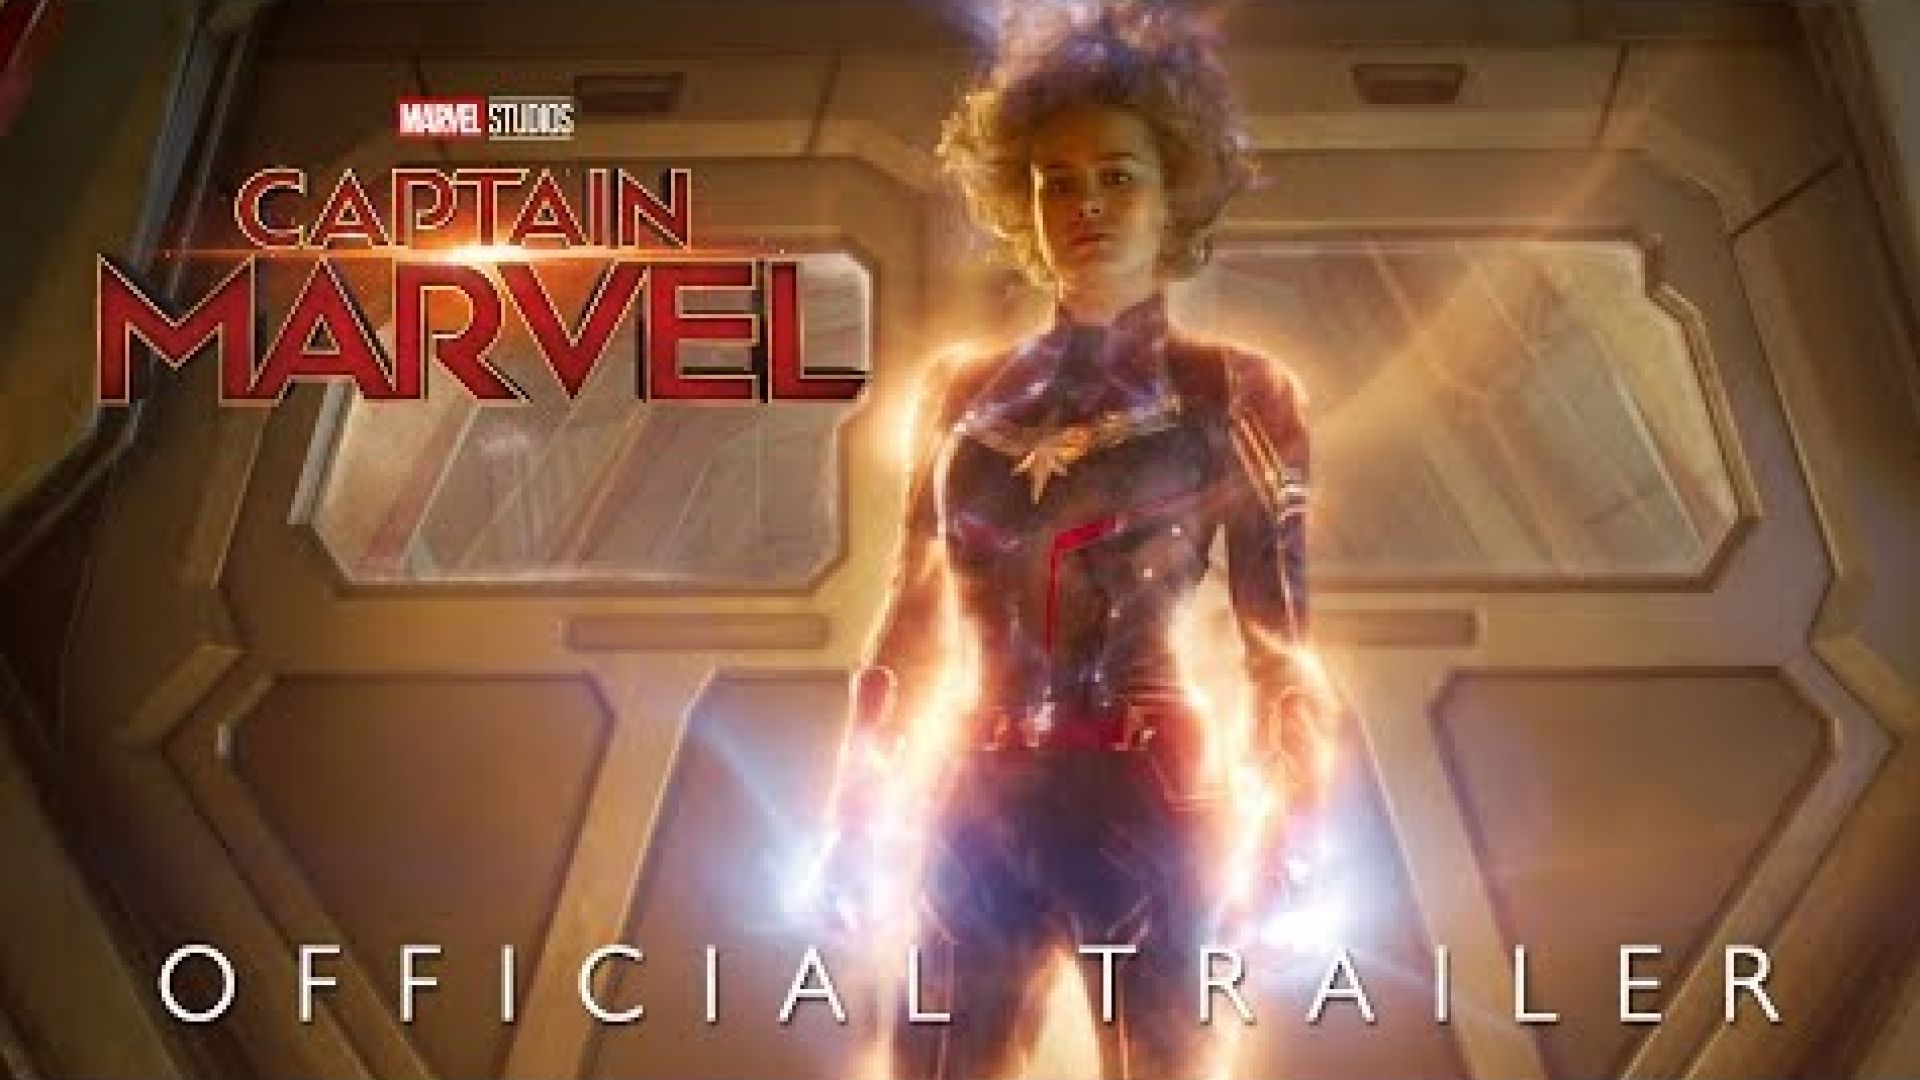 Marvel Studios' Captain Marvel Trailer